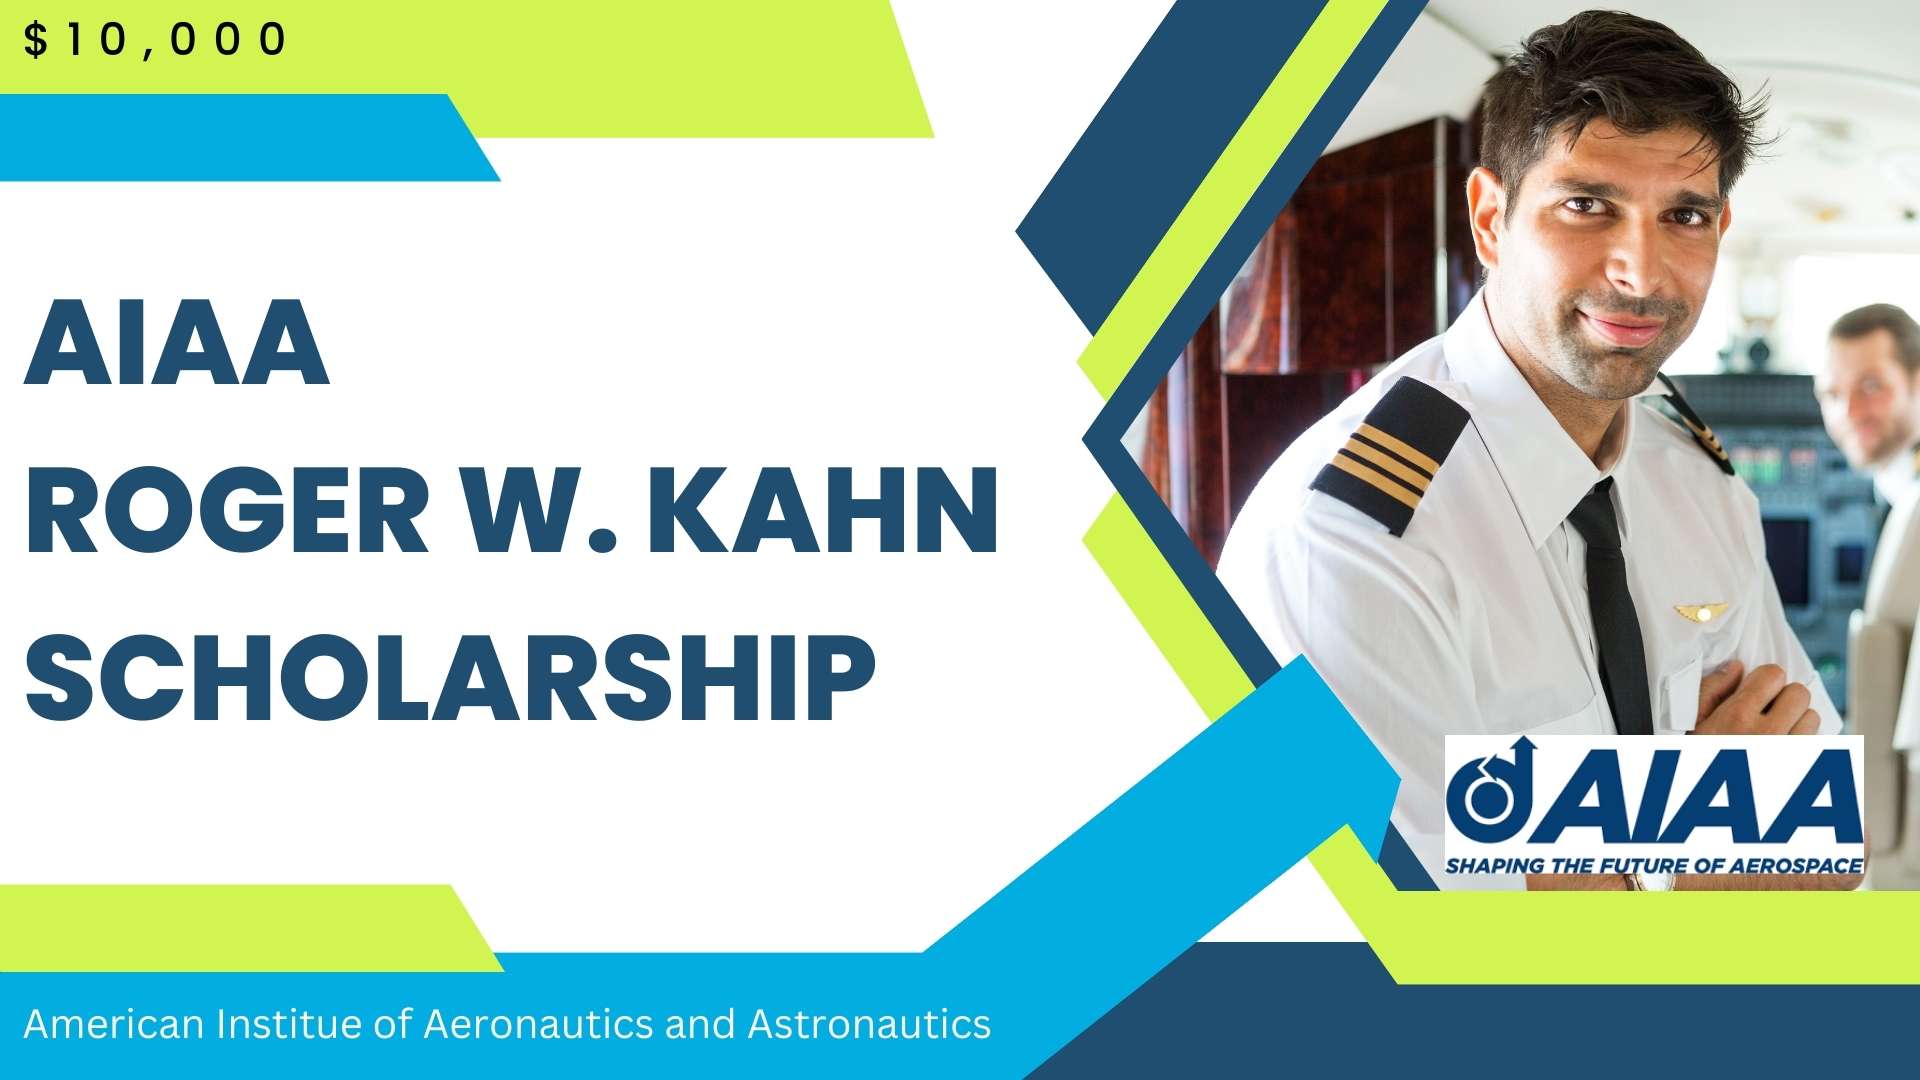 AIAA Roger W. Kahn Scholarship